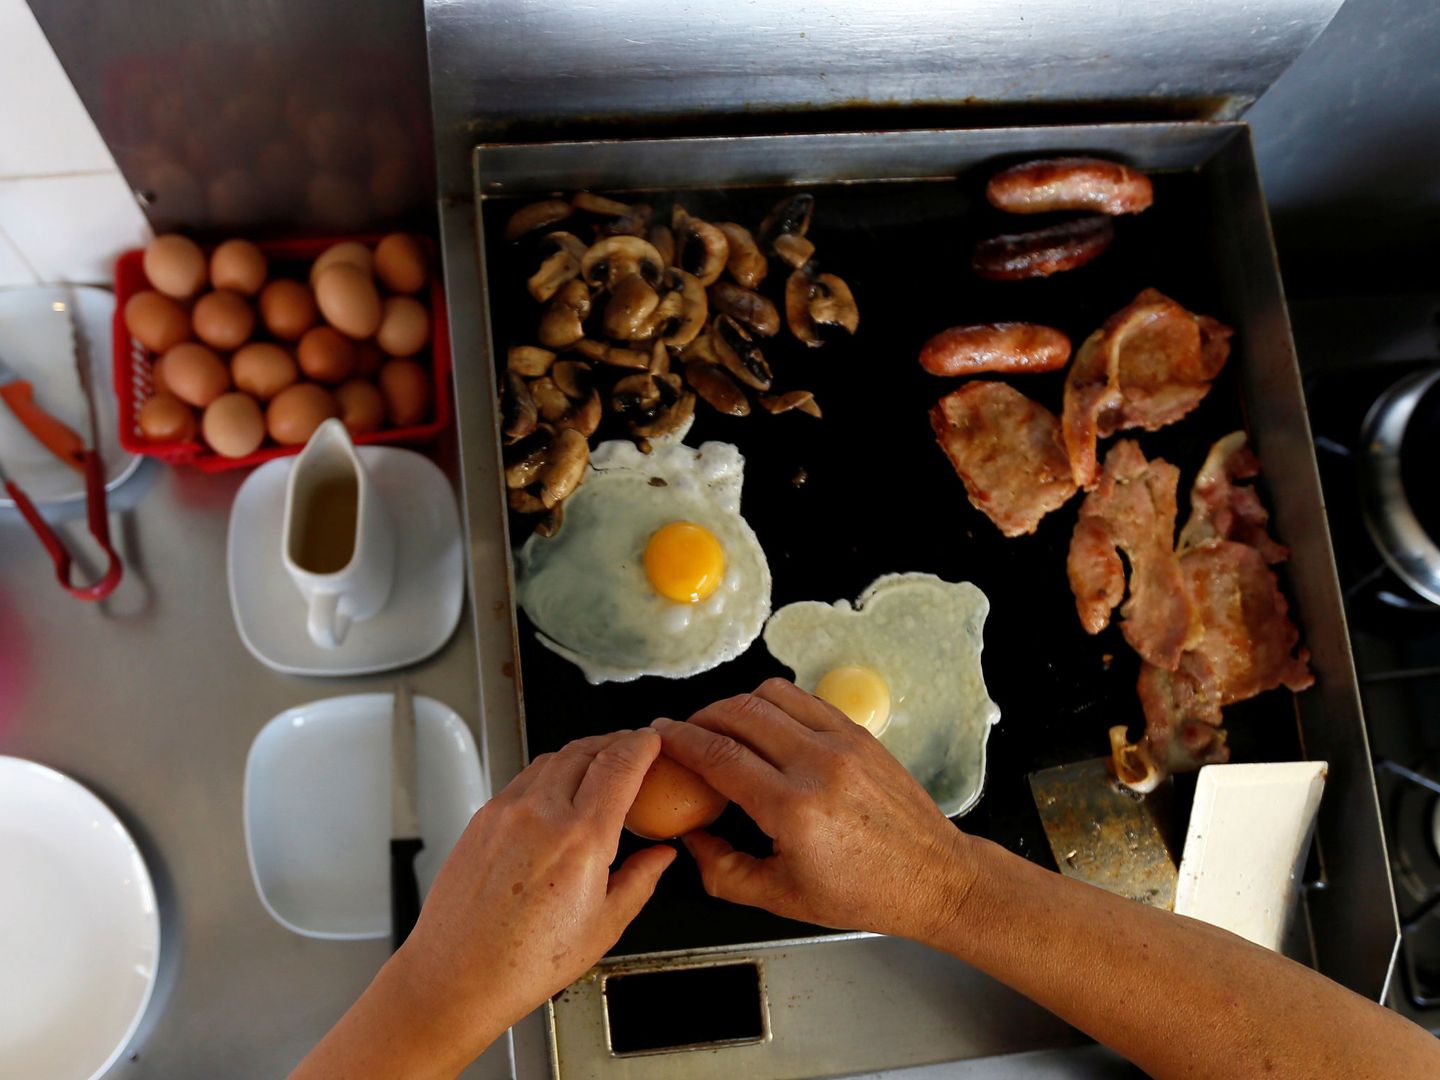 Los desayunos europeos contienen aún más calorías (Reuters/Stefan Wermuth)